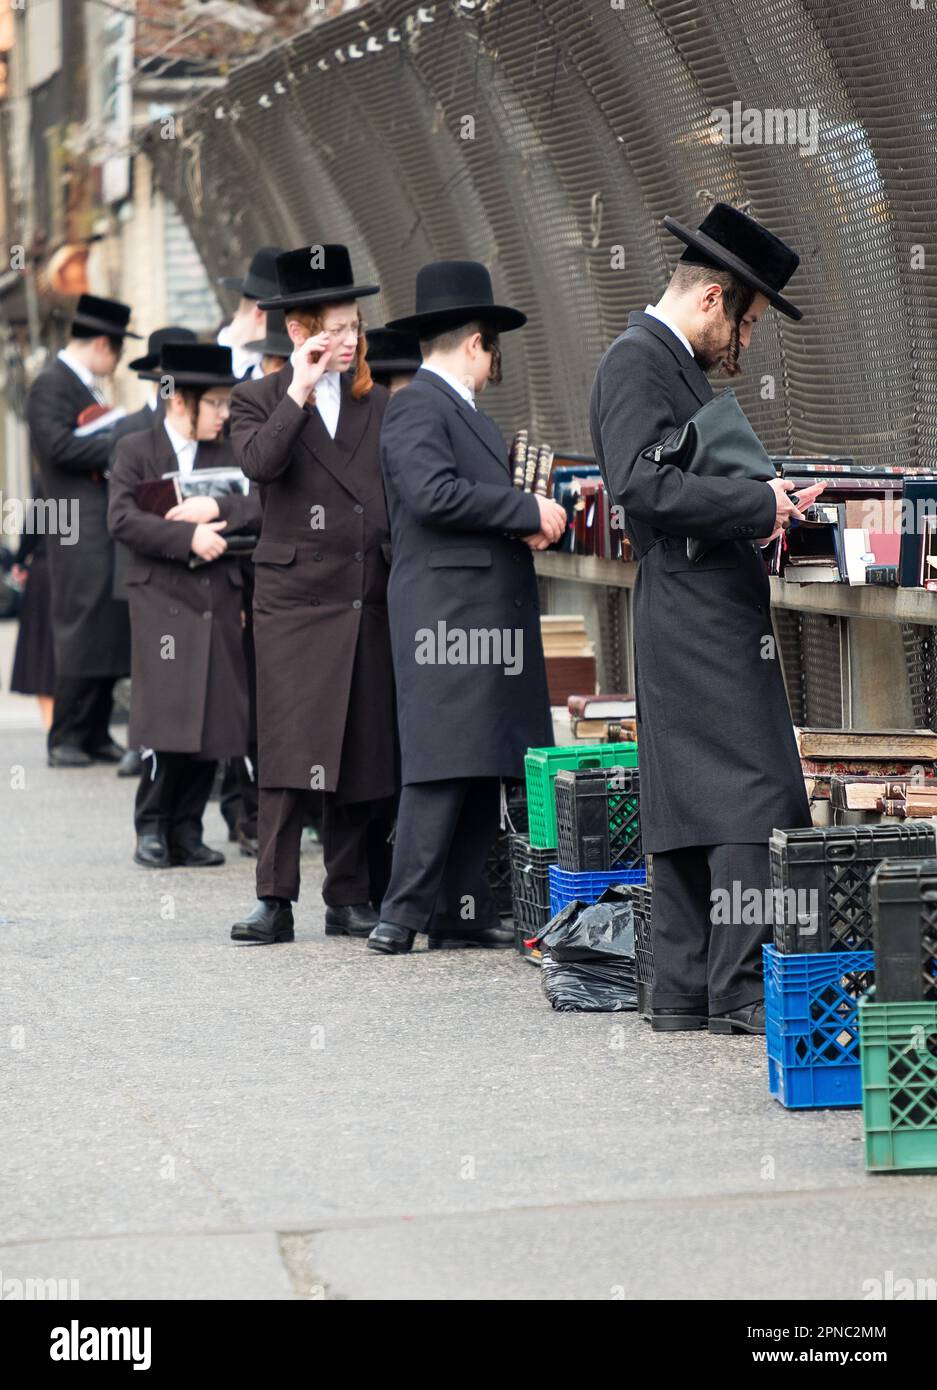 Gli ebrei hassidici di varie età spediscono libri religiosi presso uno stand all'aperto sulla strada che si affaccia sul BQE a Williamsburg, Brooklyn, New York. Foto Stock